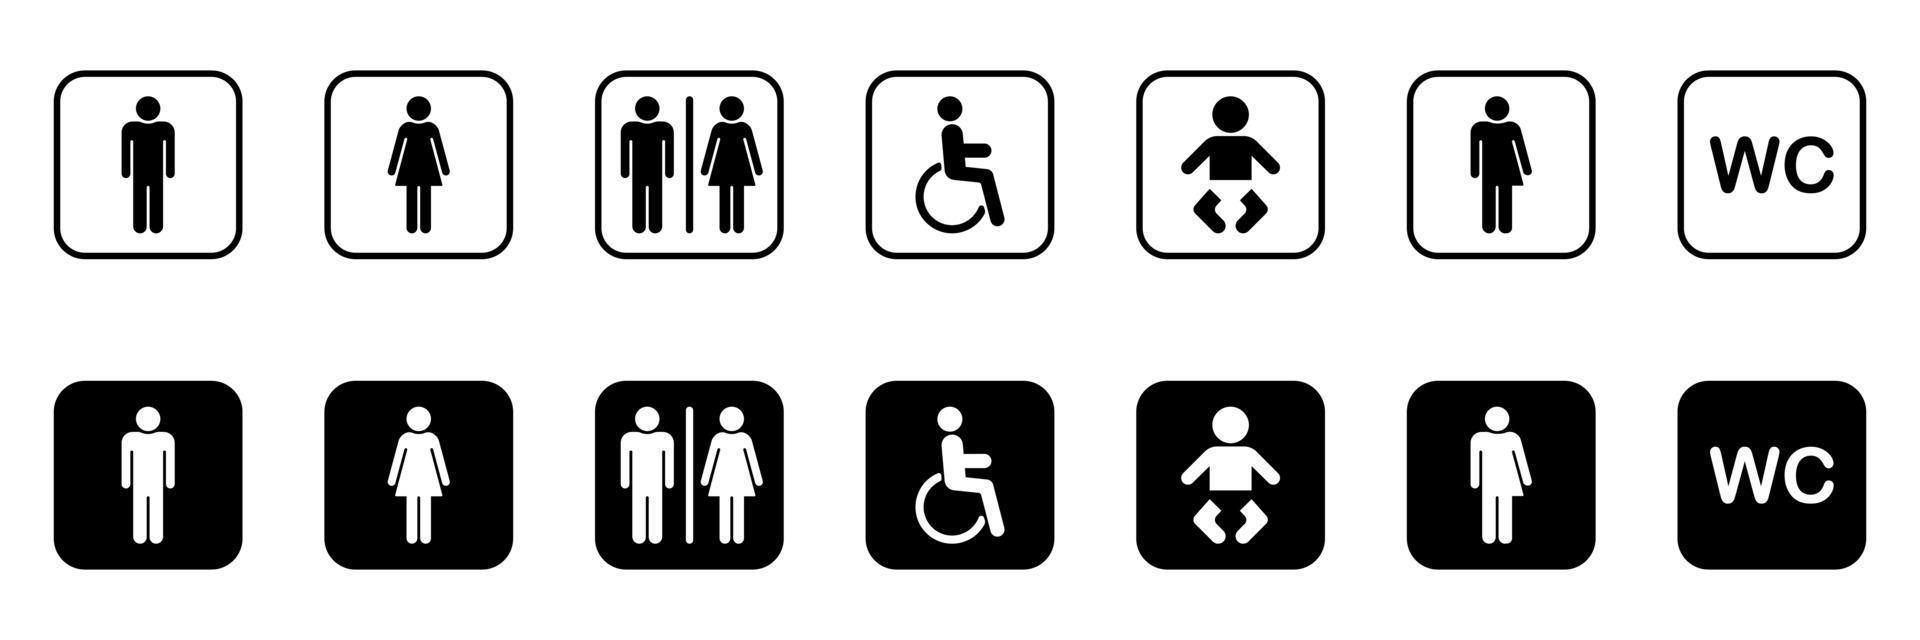 uppsättning toalett siluett ikon. samling av symboler toalett. mamma och bebis rum. tecken på tvättrum för män, kvinnor, transpersoner, funktionshindrade. wc-skylt på dörren för offentlig toalett. vektor illustration.